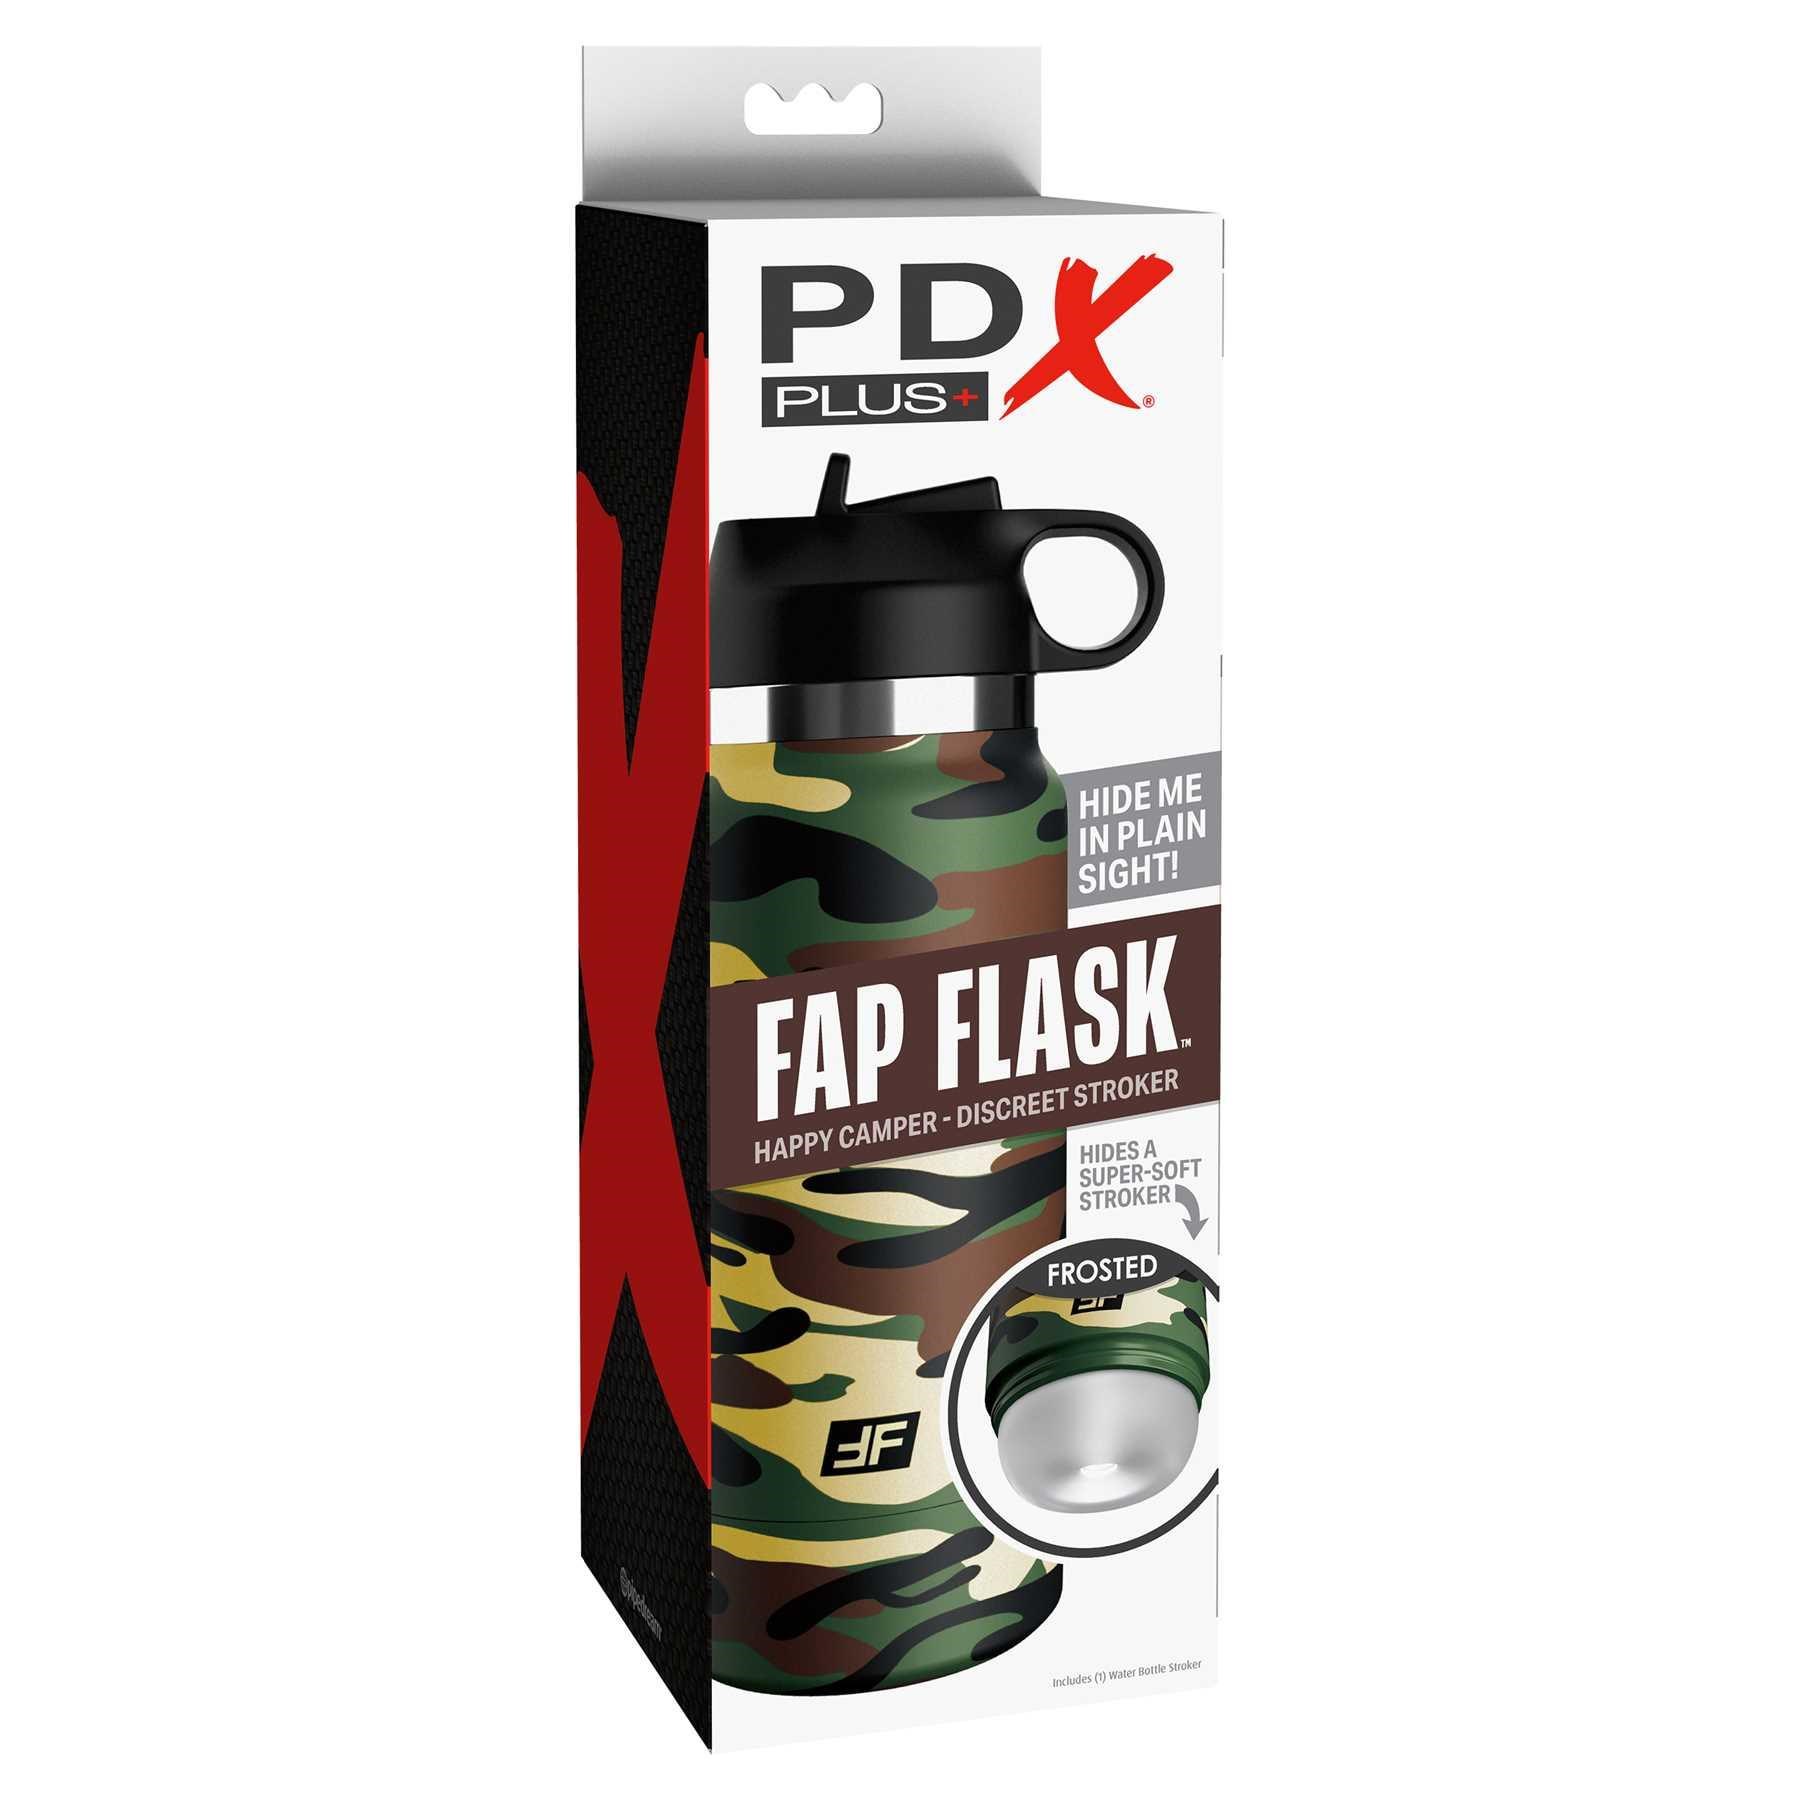 PDX Plus Fap Flask Stroker - Happy Camper male masturbator